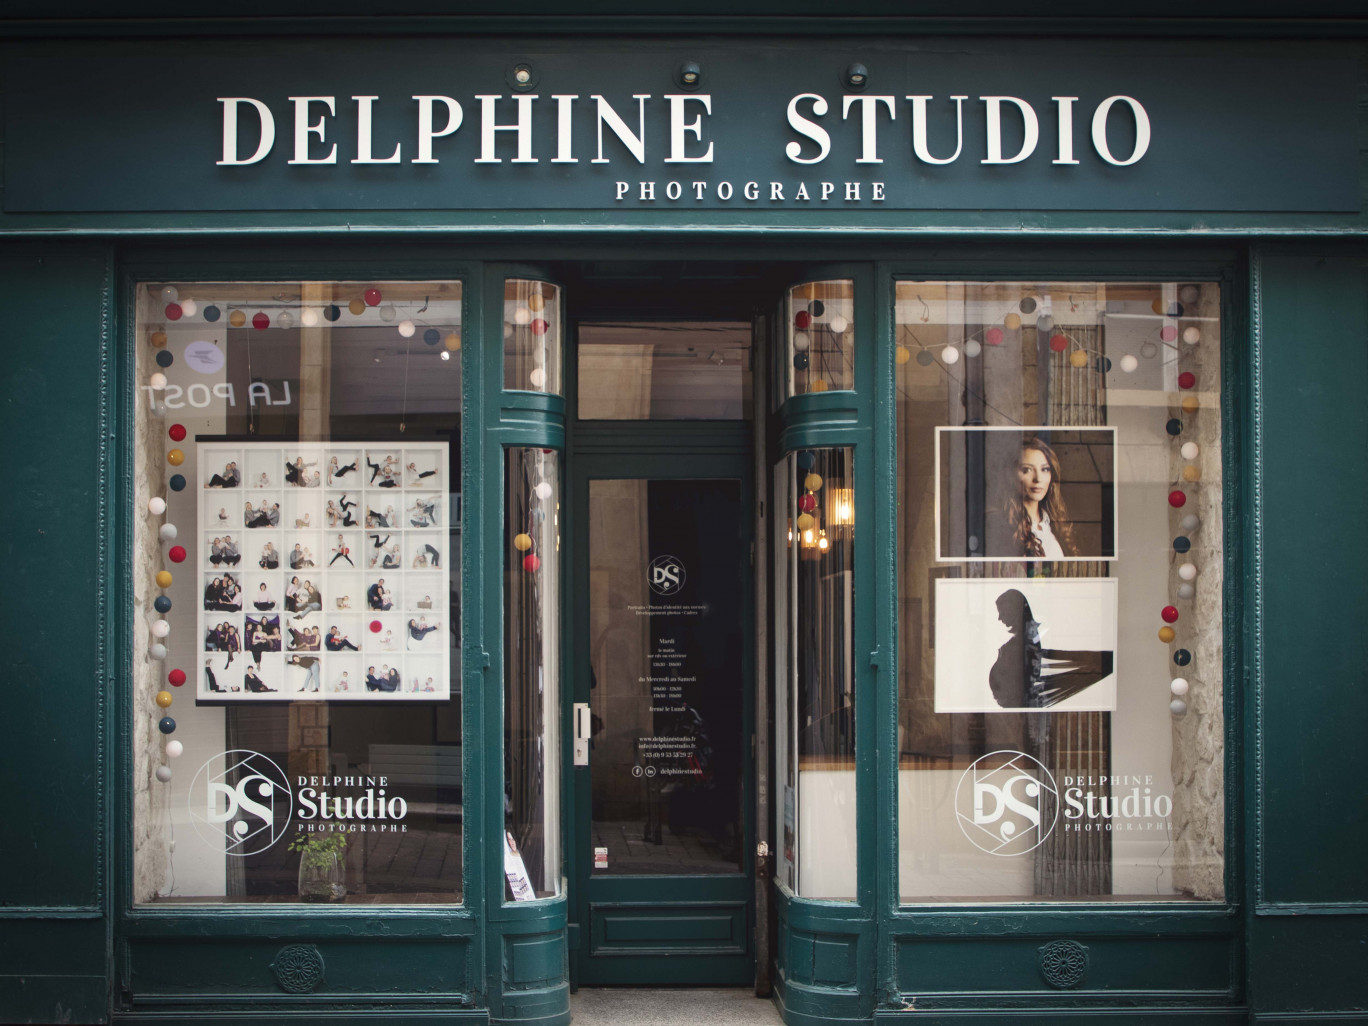 Delphine Studio est toujours à la hauteur des attentes et exigences de sa clientèle.